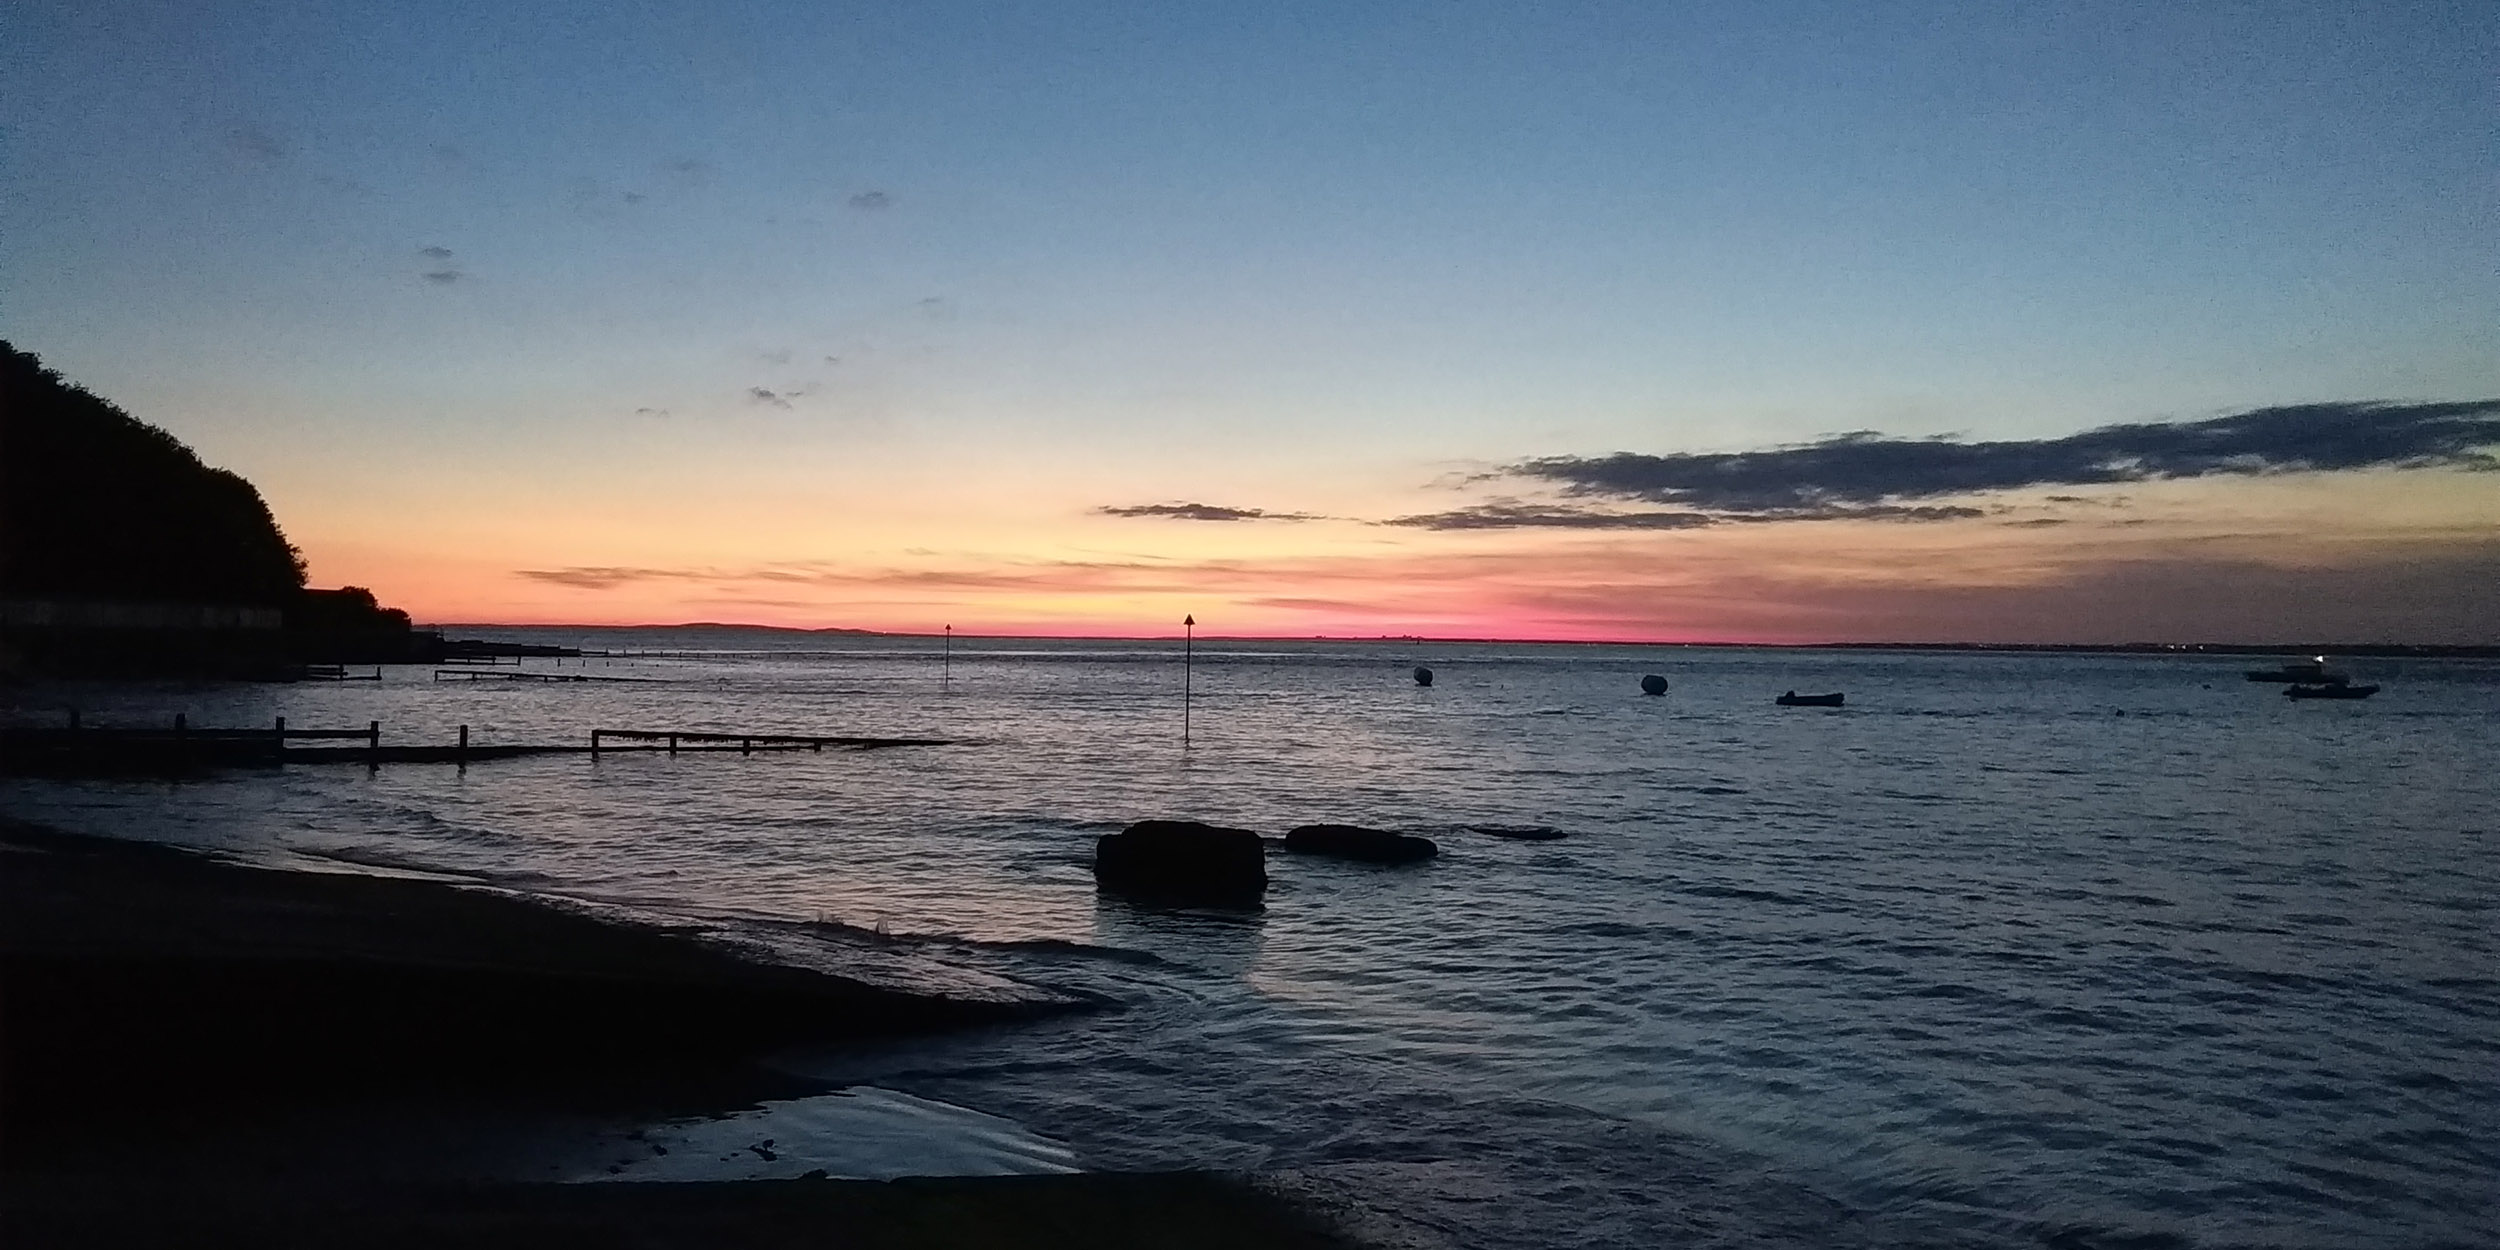 Isle of Wight beautiful sunset